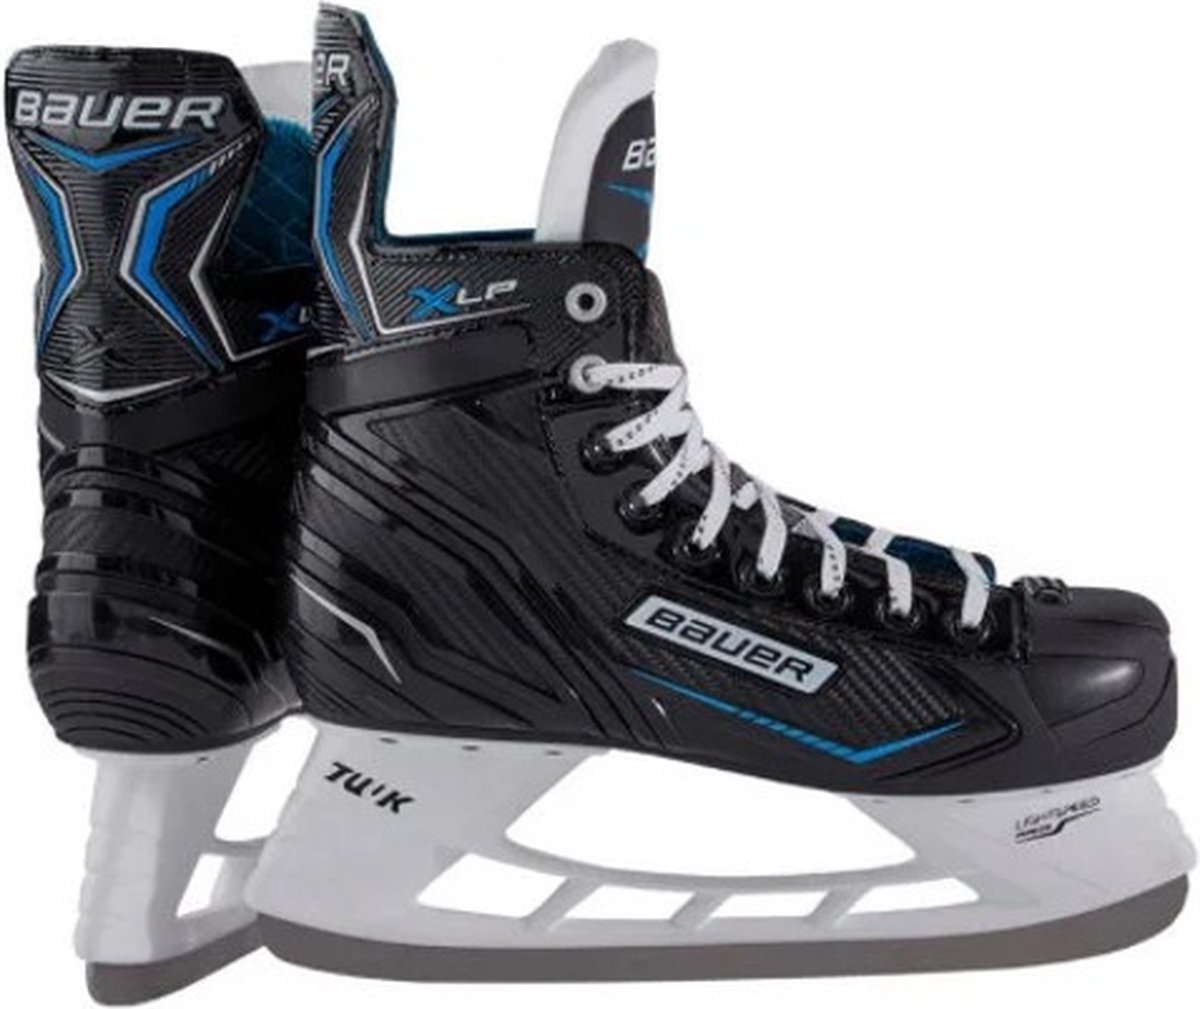 Bauer ijshockeyschaats X-LP zwart-zilver-blauw (size 6.0 maat 40,5) geslepen